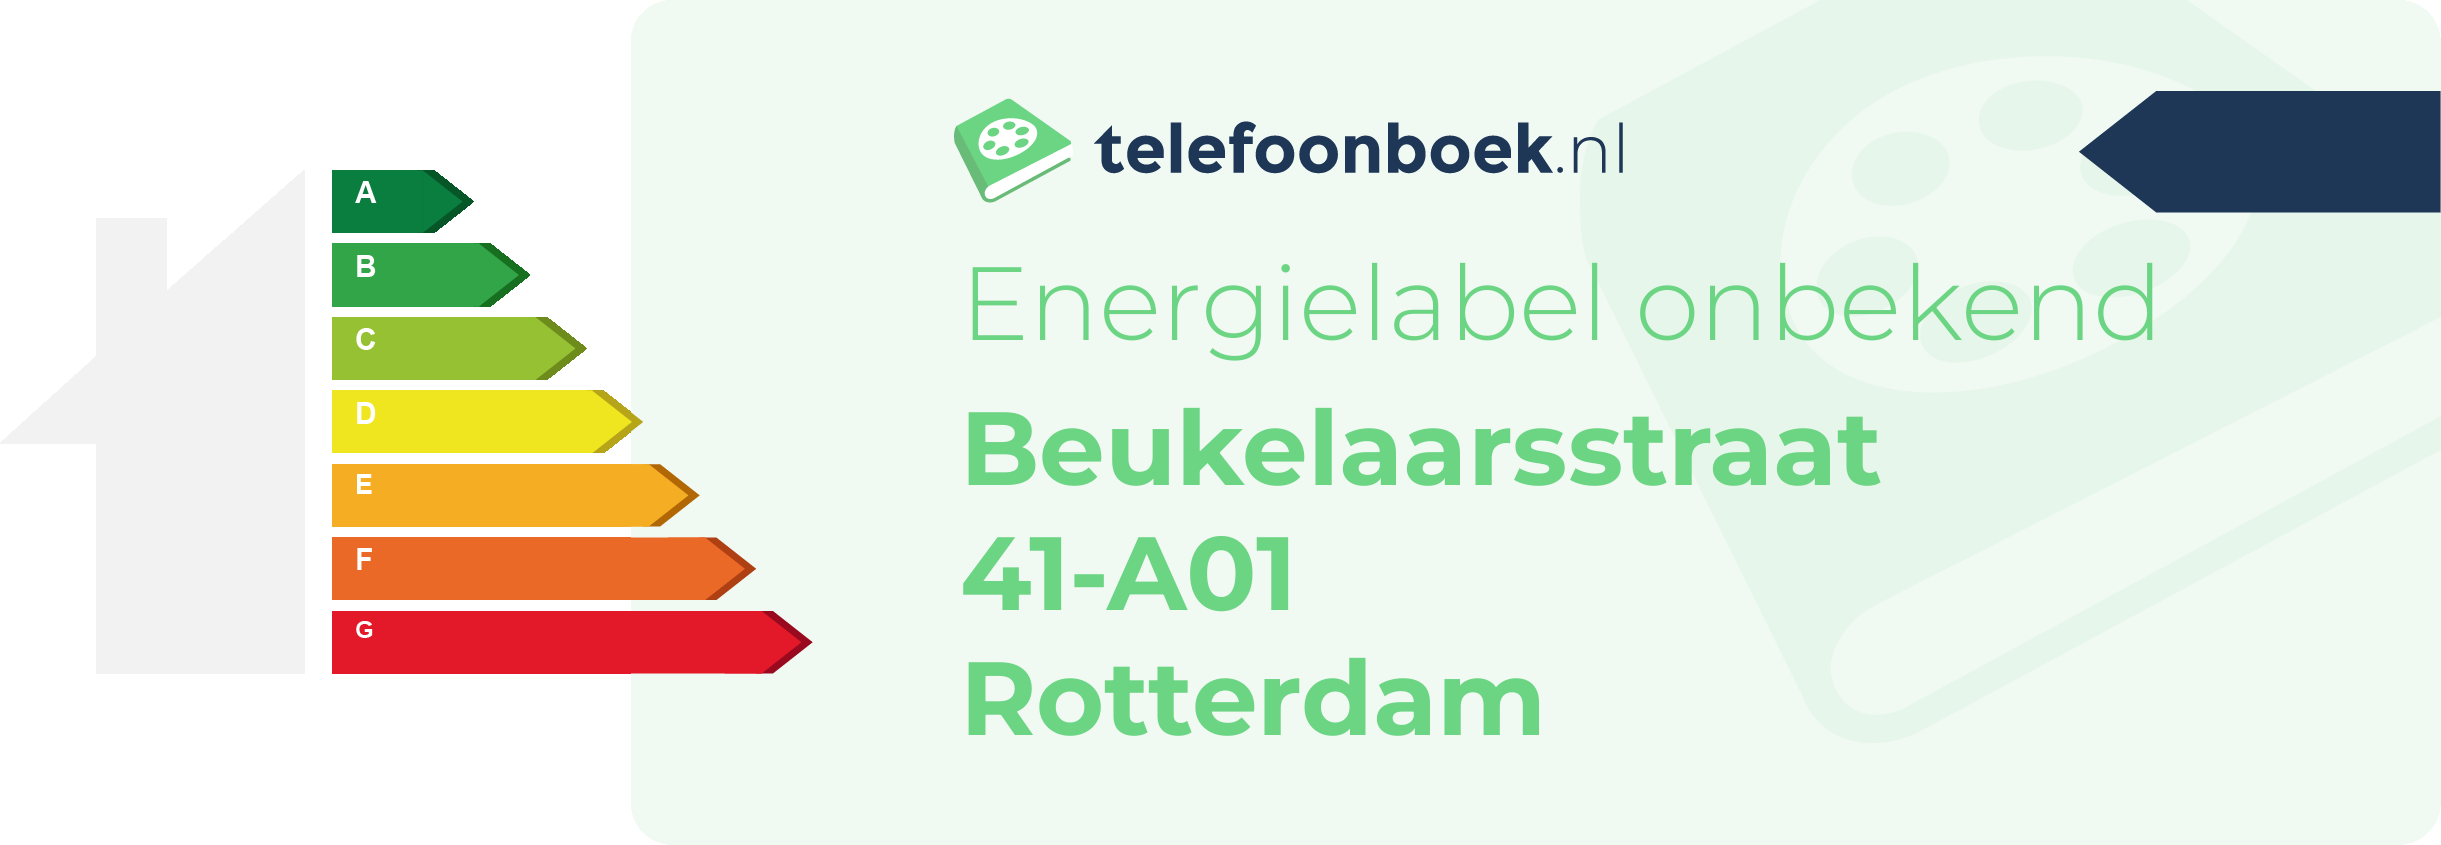 Energielabel Beukelaarsstraat 41-A01 Rotterdam